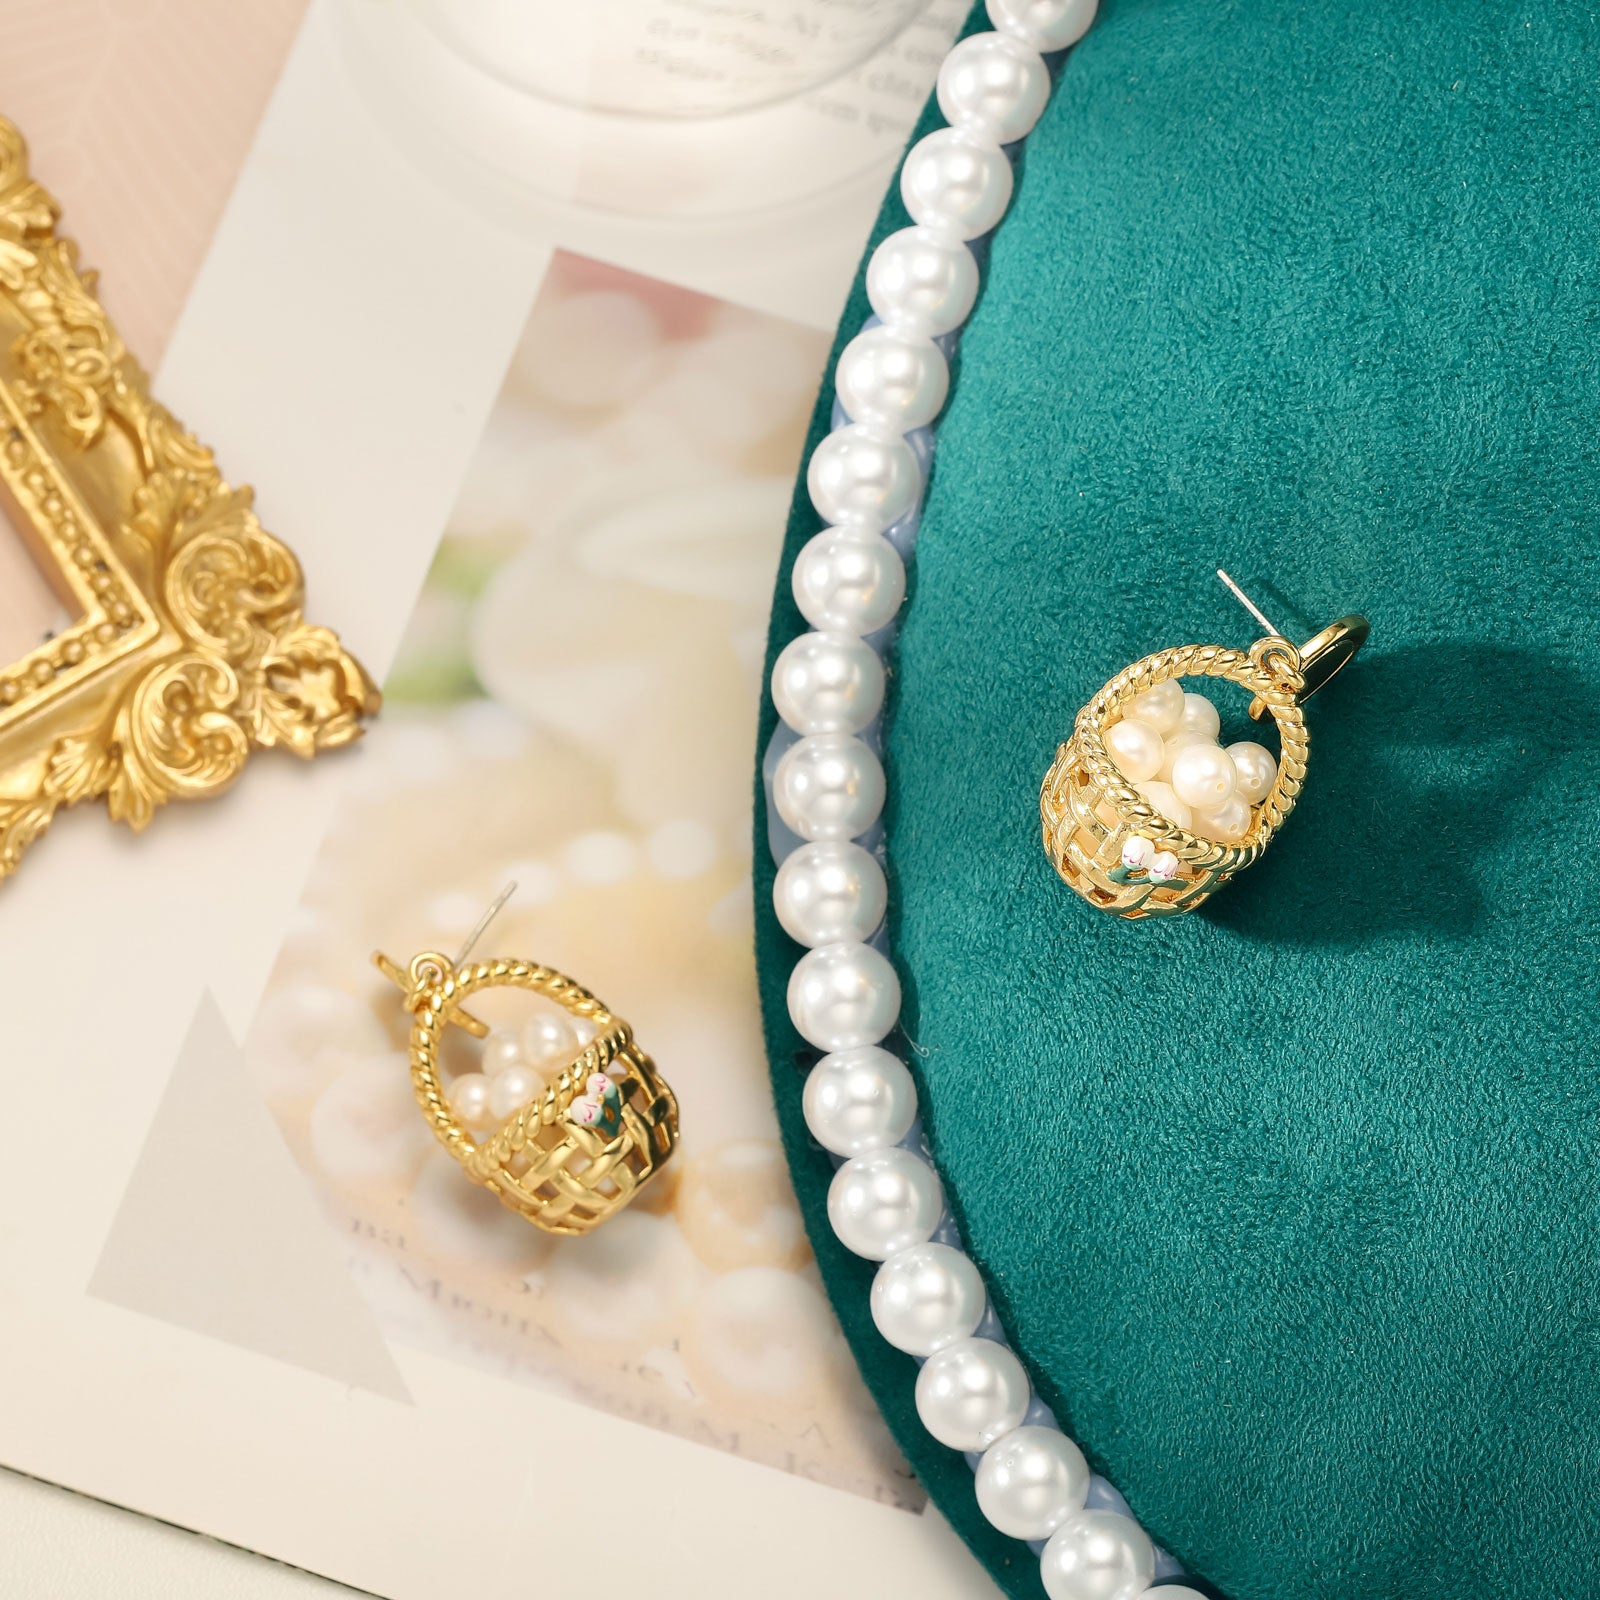 Baskets of Pearls Dangle Earrings